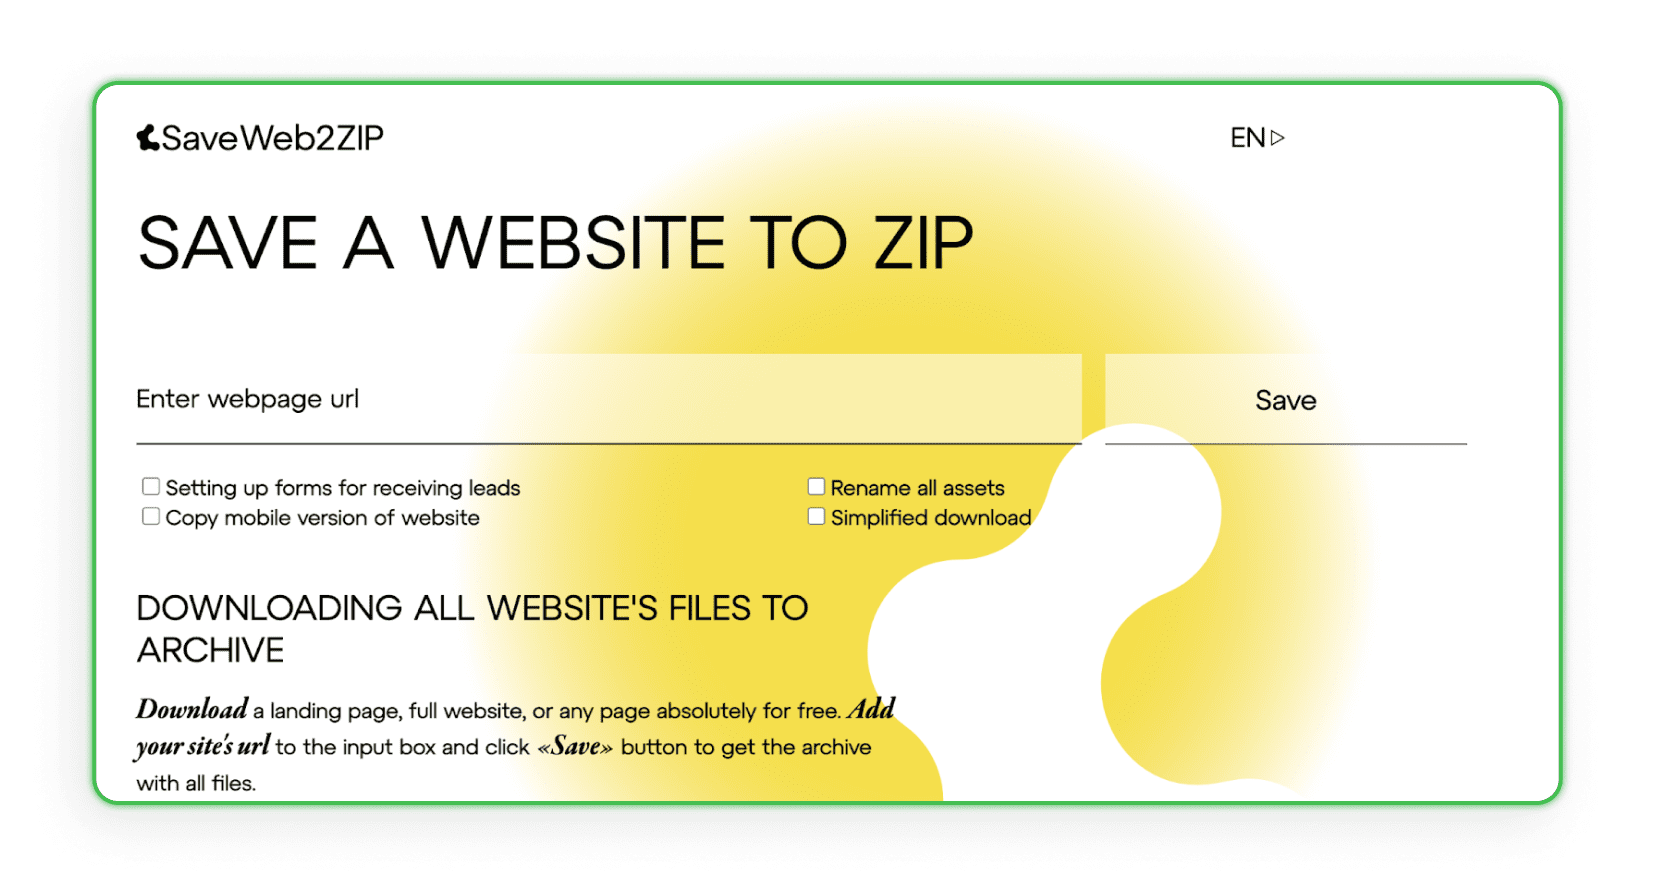 Guarda la interfaz de una Web 2 ZIP